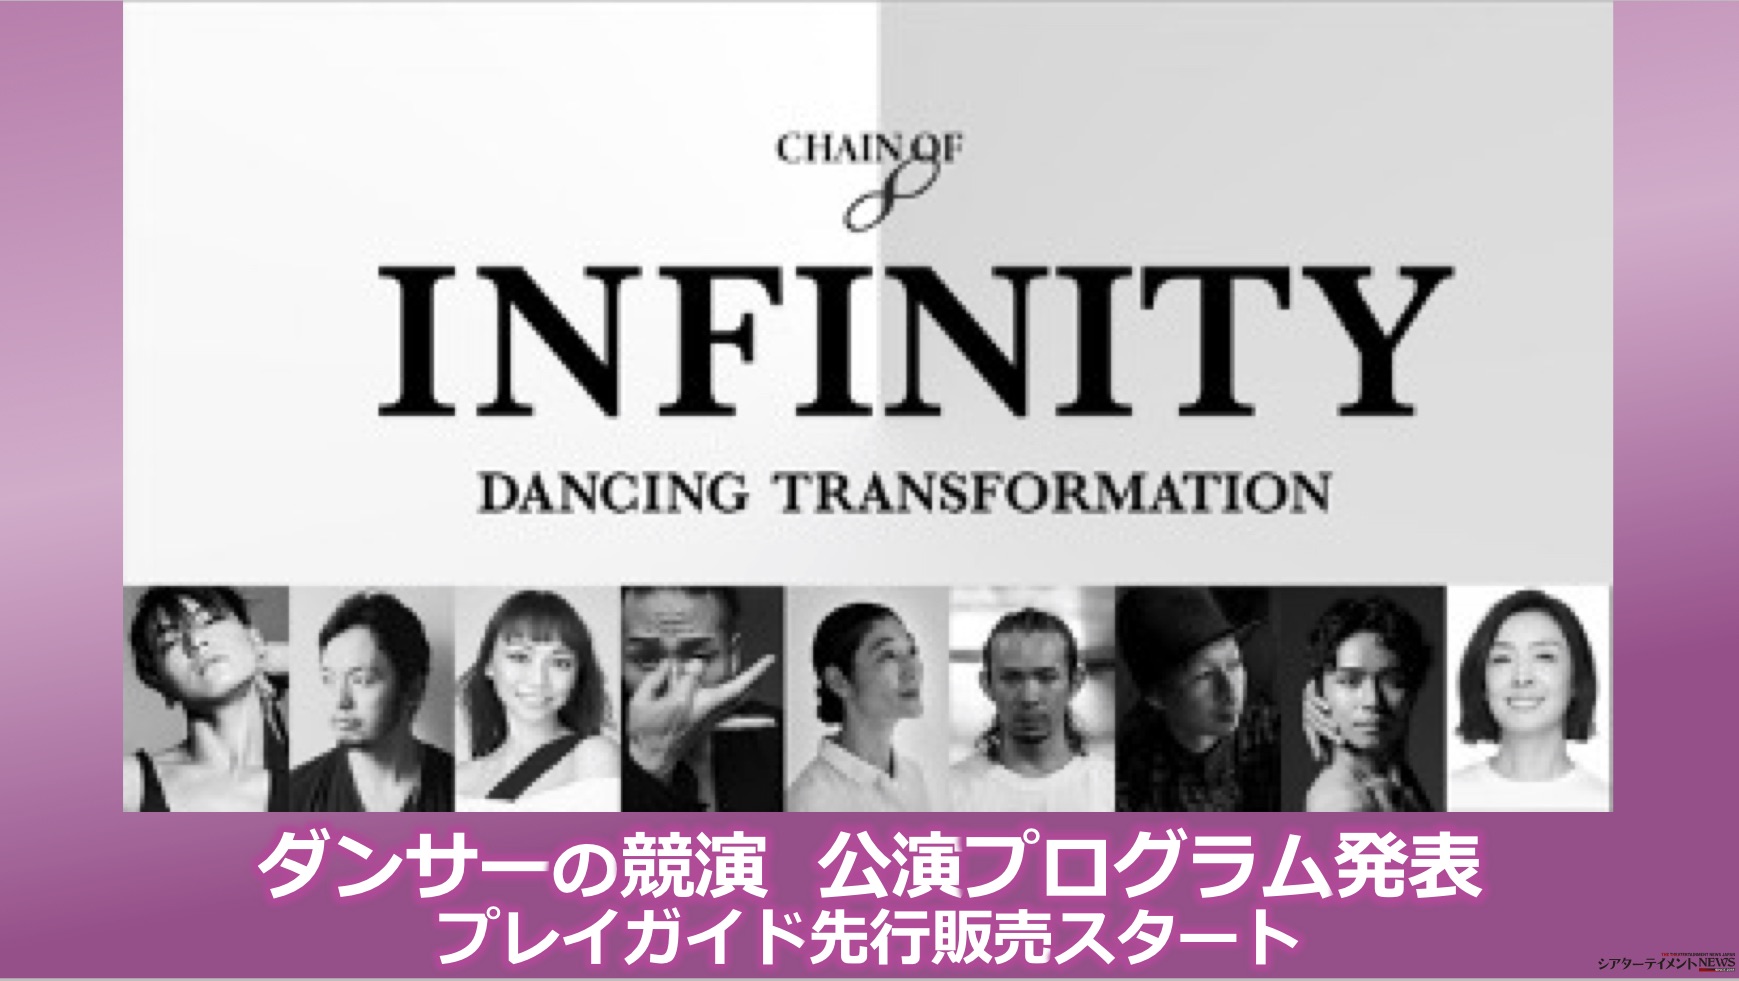 ダンサーの競演 Infinity 公演プログラム発表 プレイガイド先行販売スタート シアターテイメントnews